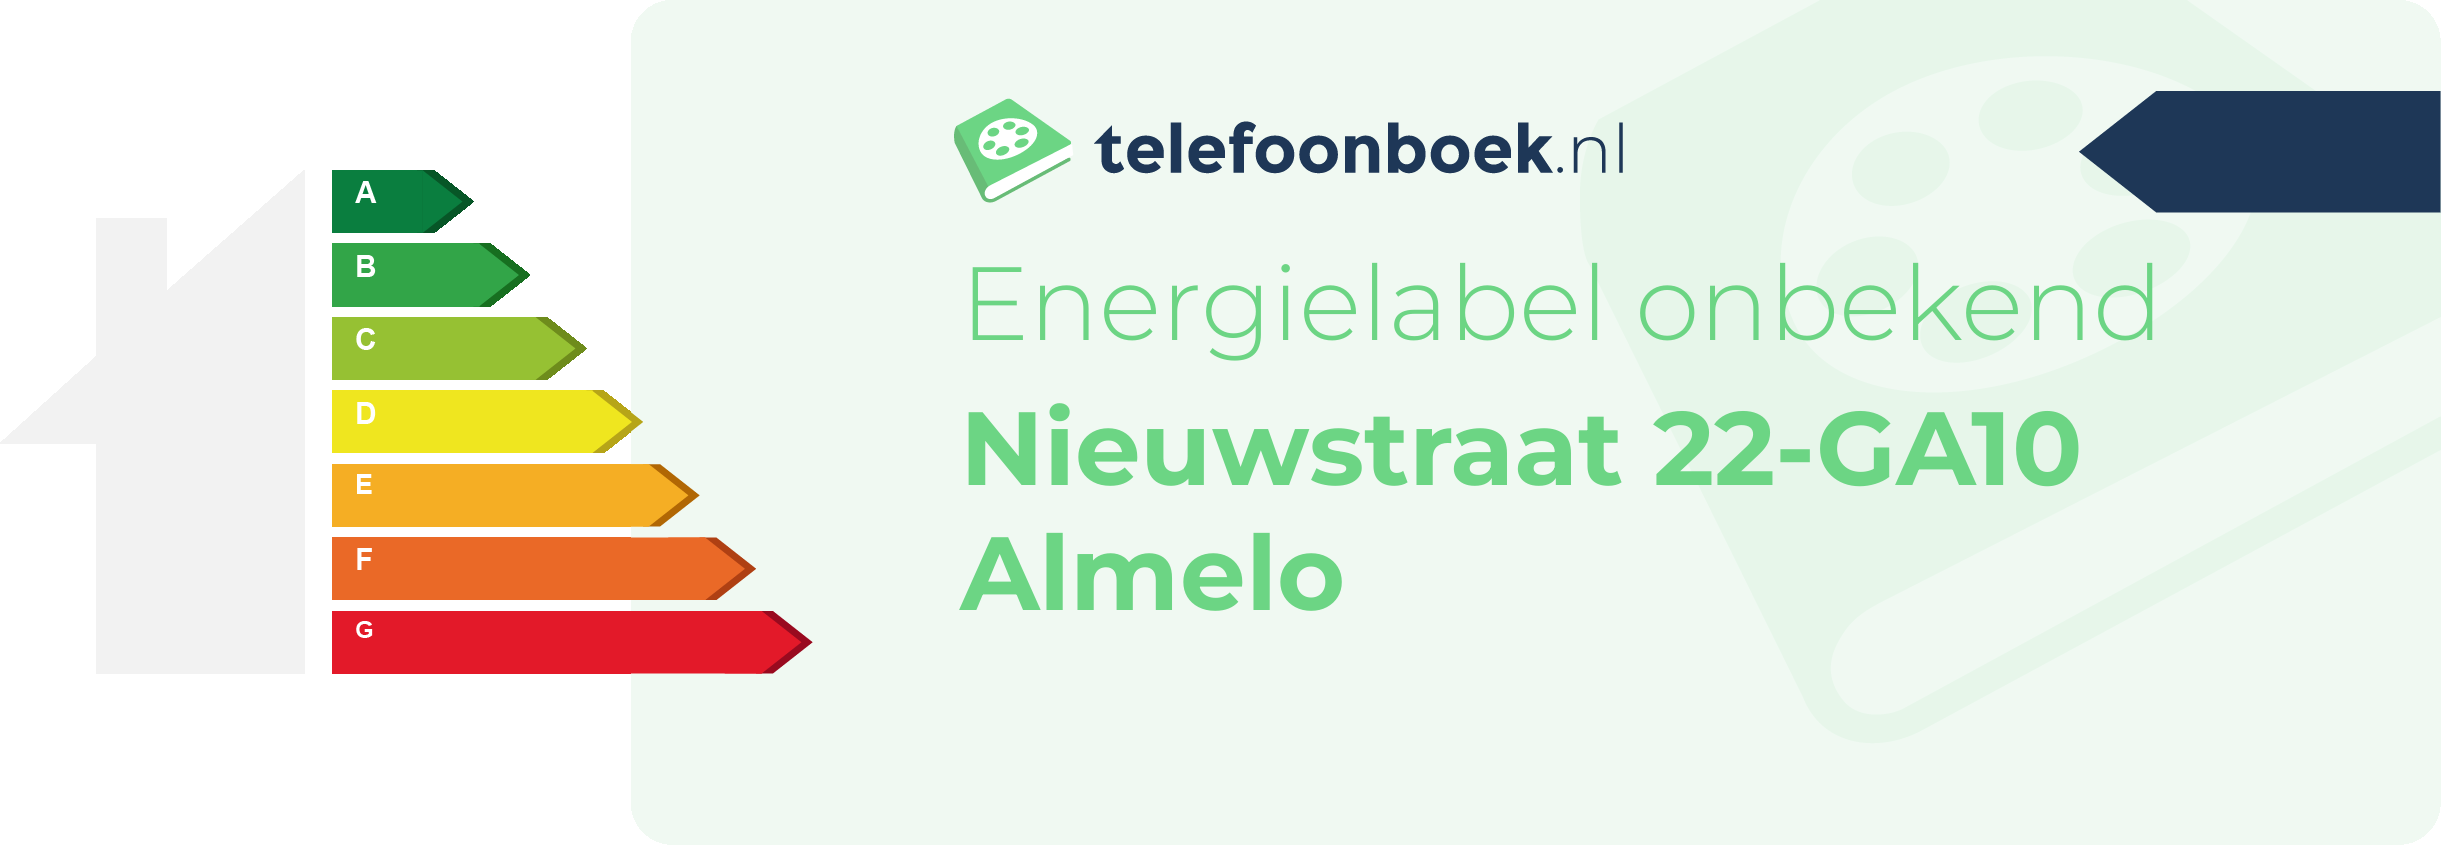 Energielabel Nieuwstraat 22-GA10 Almelo